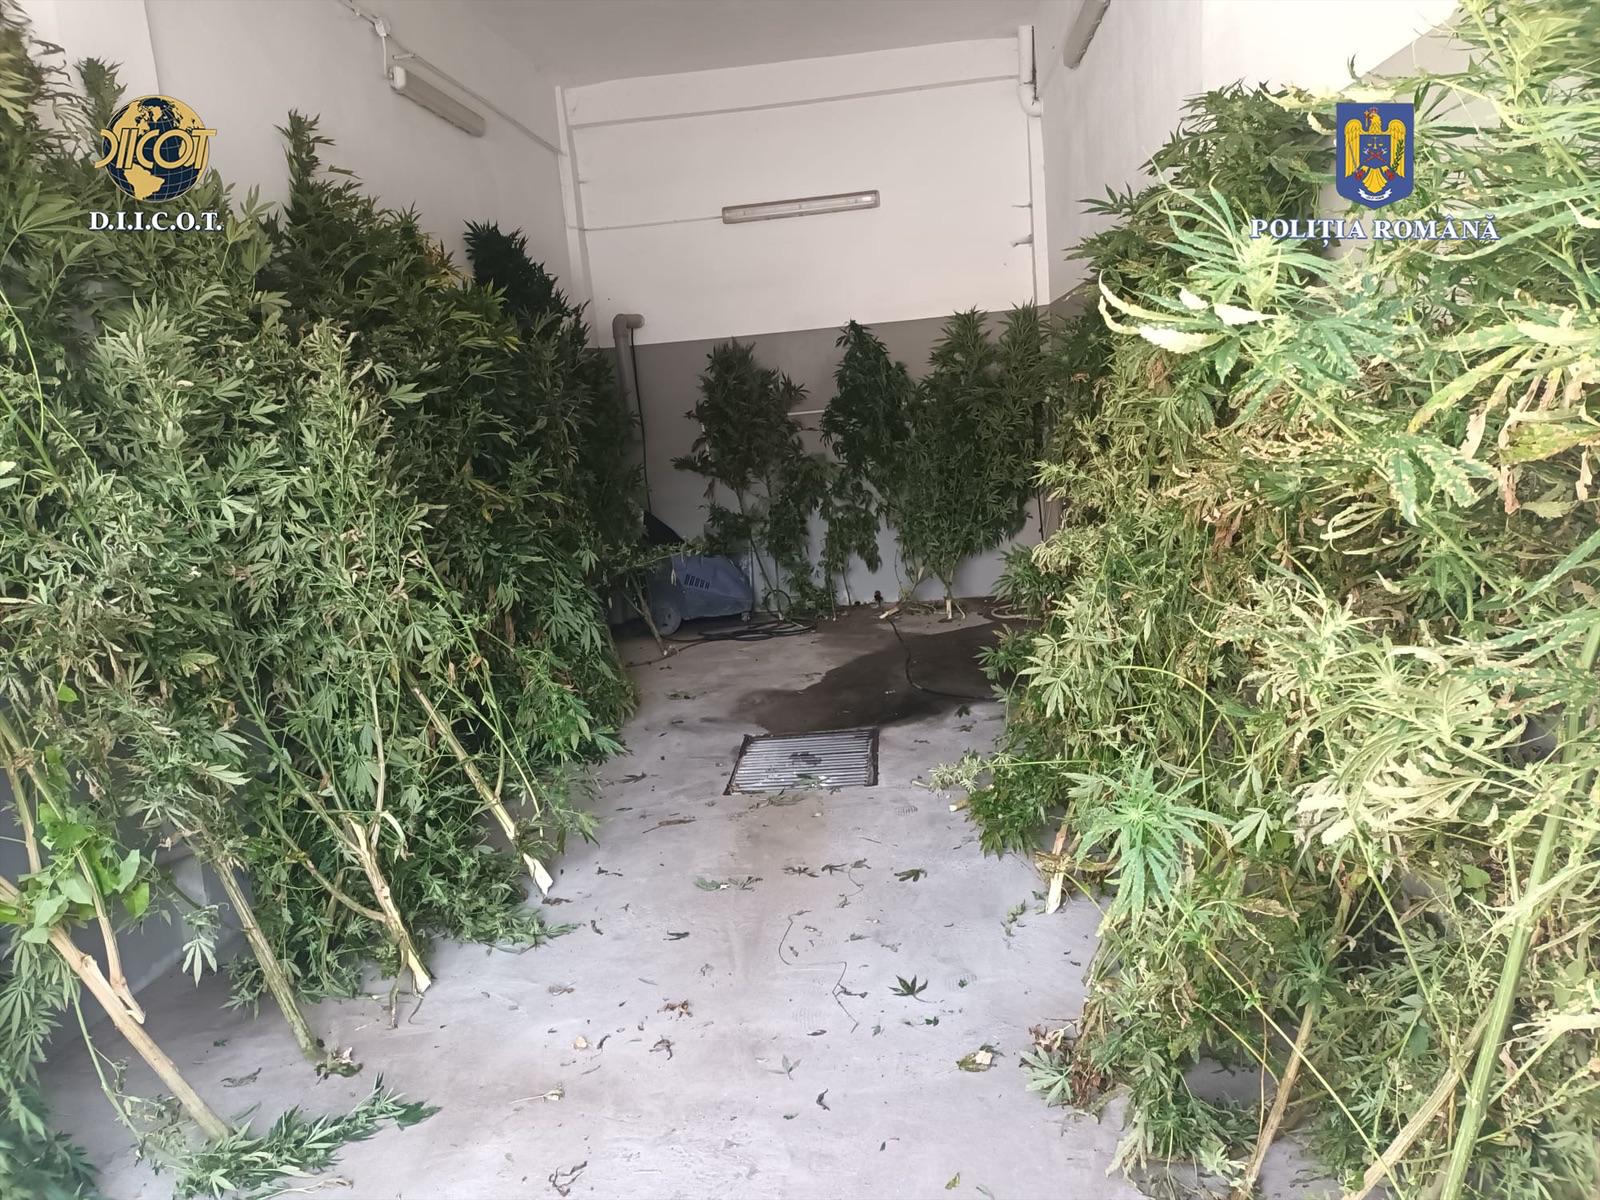 Kannabisz-ültetvényeket talált a rendőrség Sepsikőröspatakon